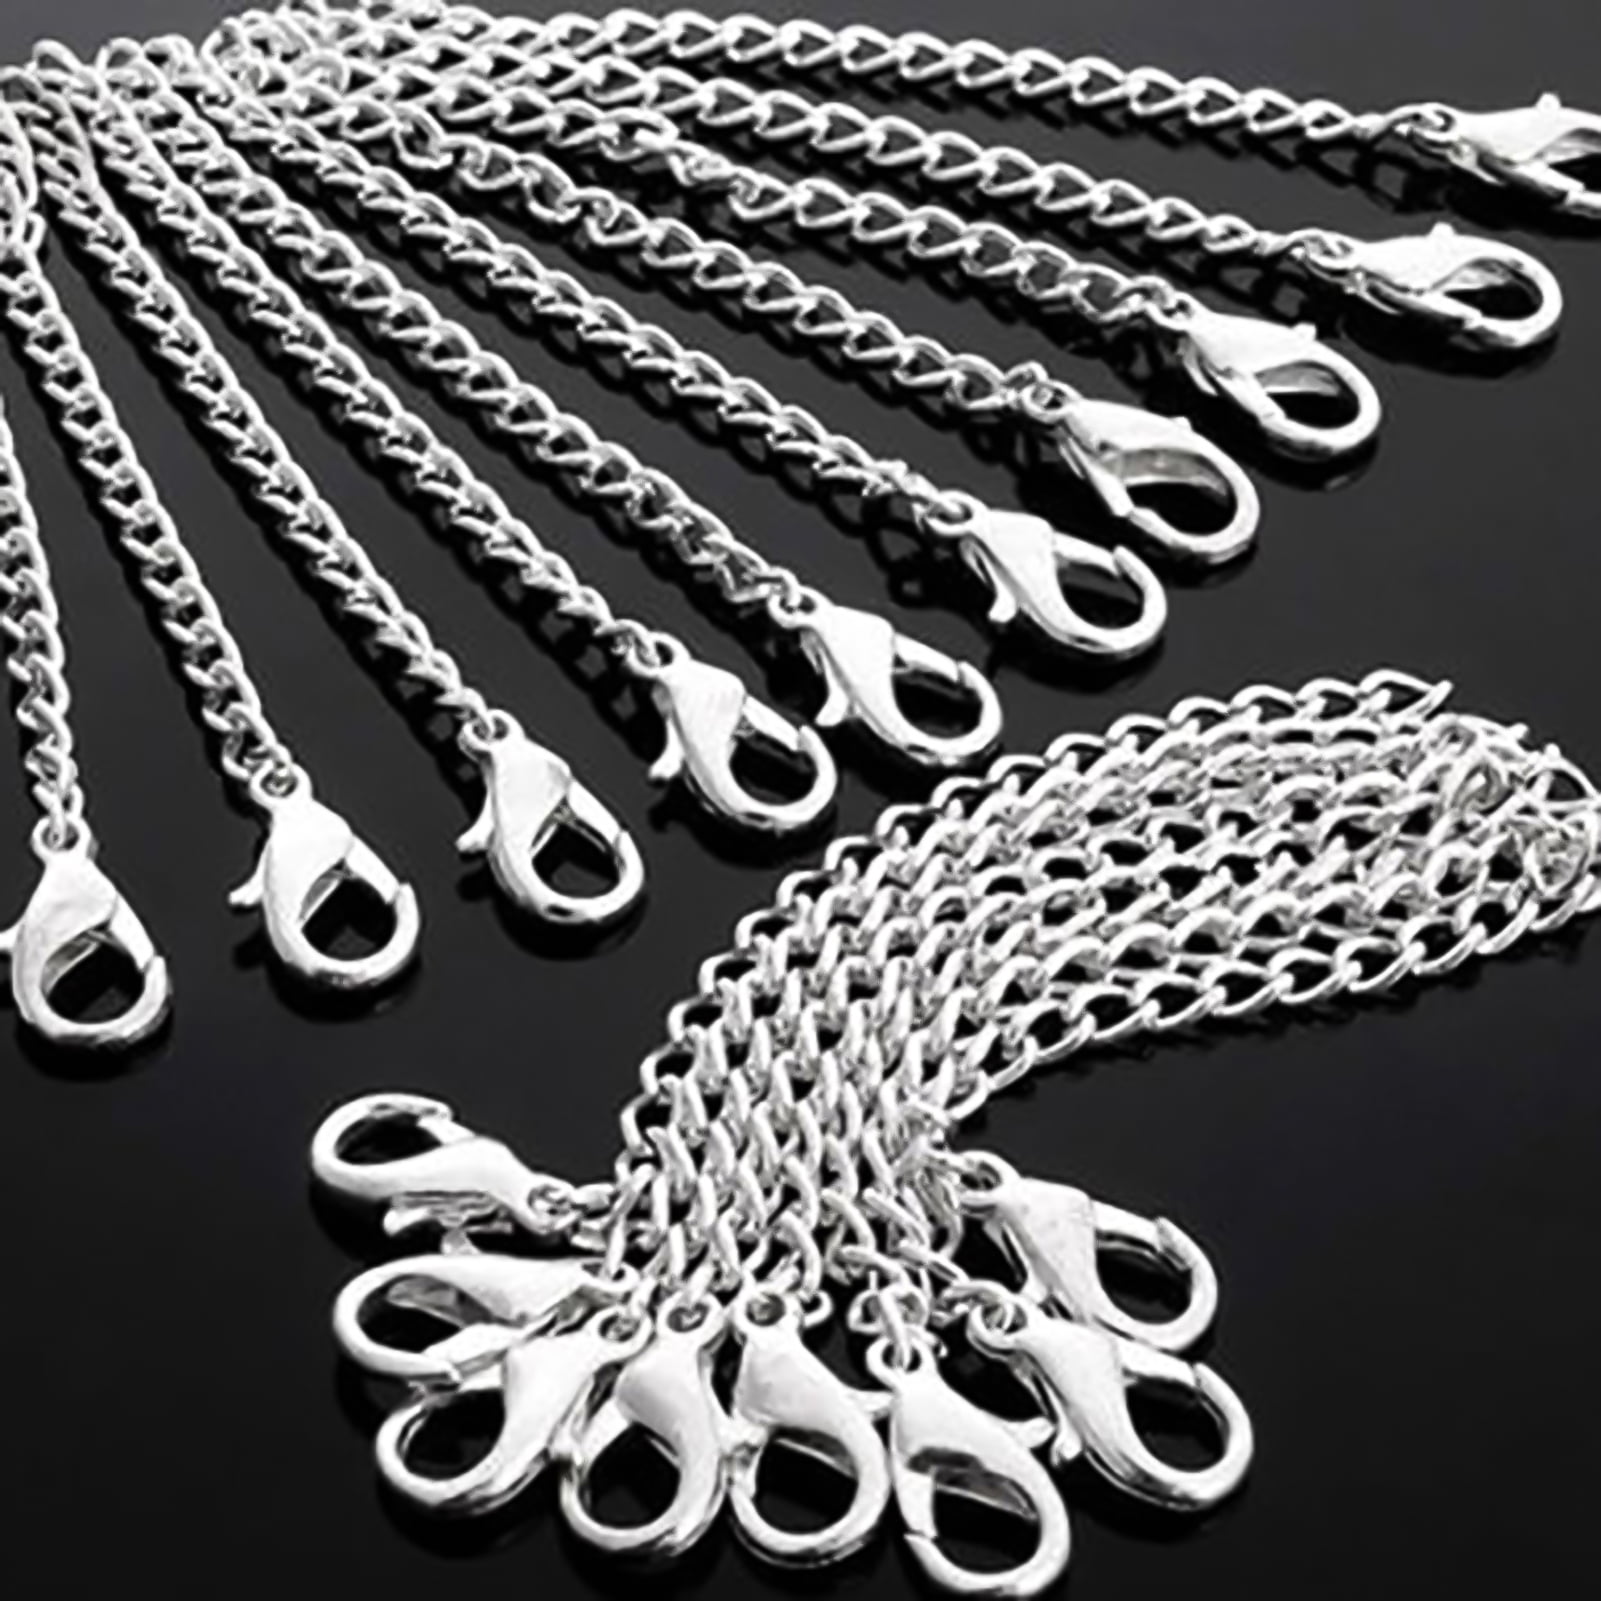 COHEALI 3 Rolls Nk Chain Metal DIY Chains Chain for Jewelry Making Jewelry  Chain Chains for Jewelry Making Necklace Chain Extender Jewelry Extension